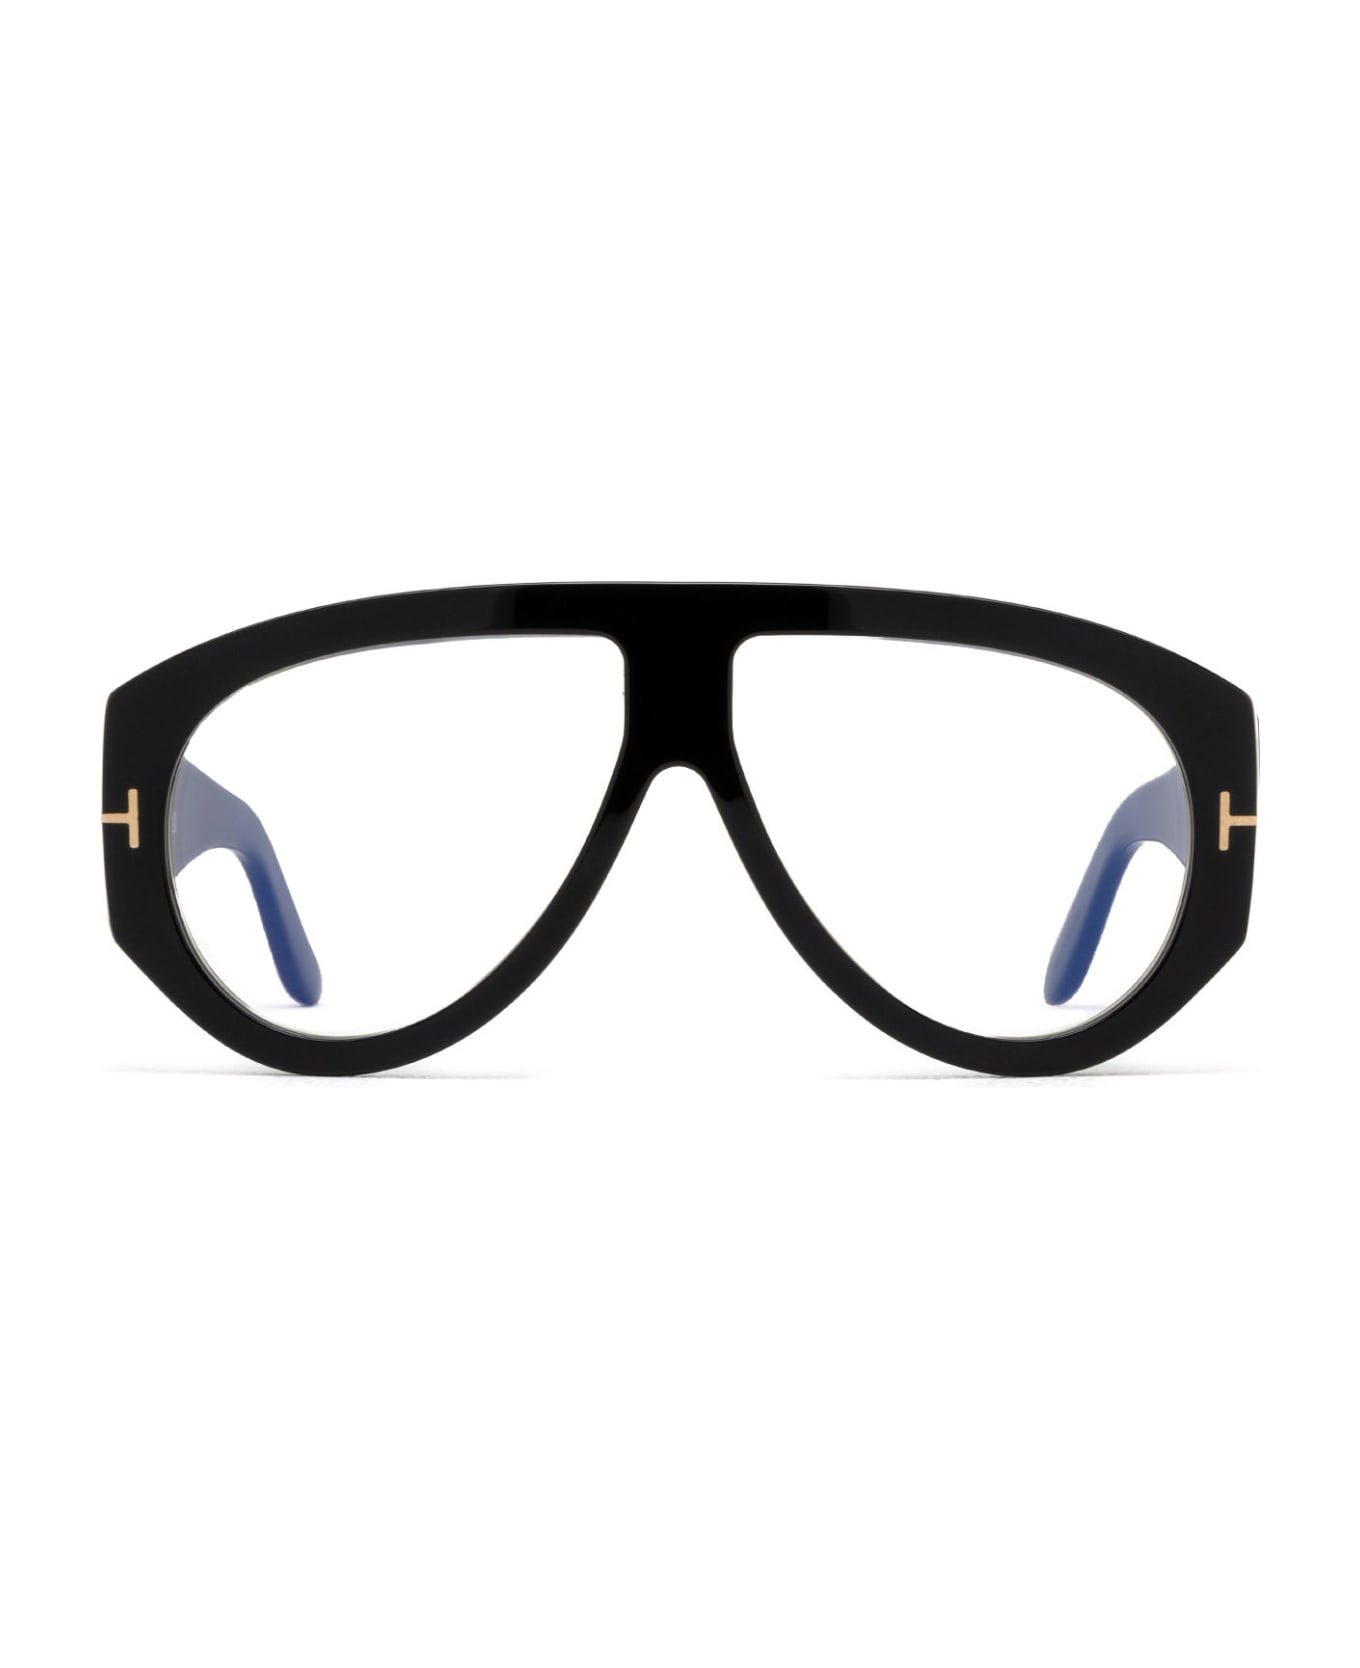 Tom Ford Eyewear Ft5958-b Shiny Black Glasses - Shiny Black